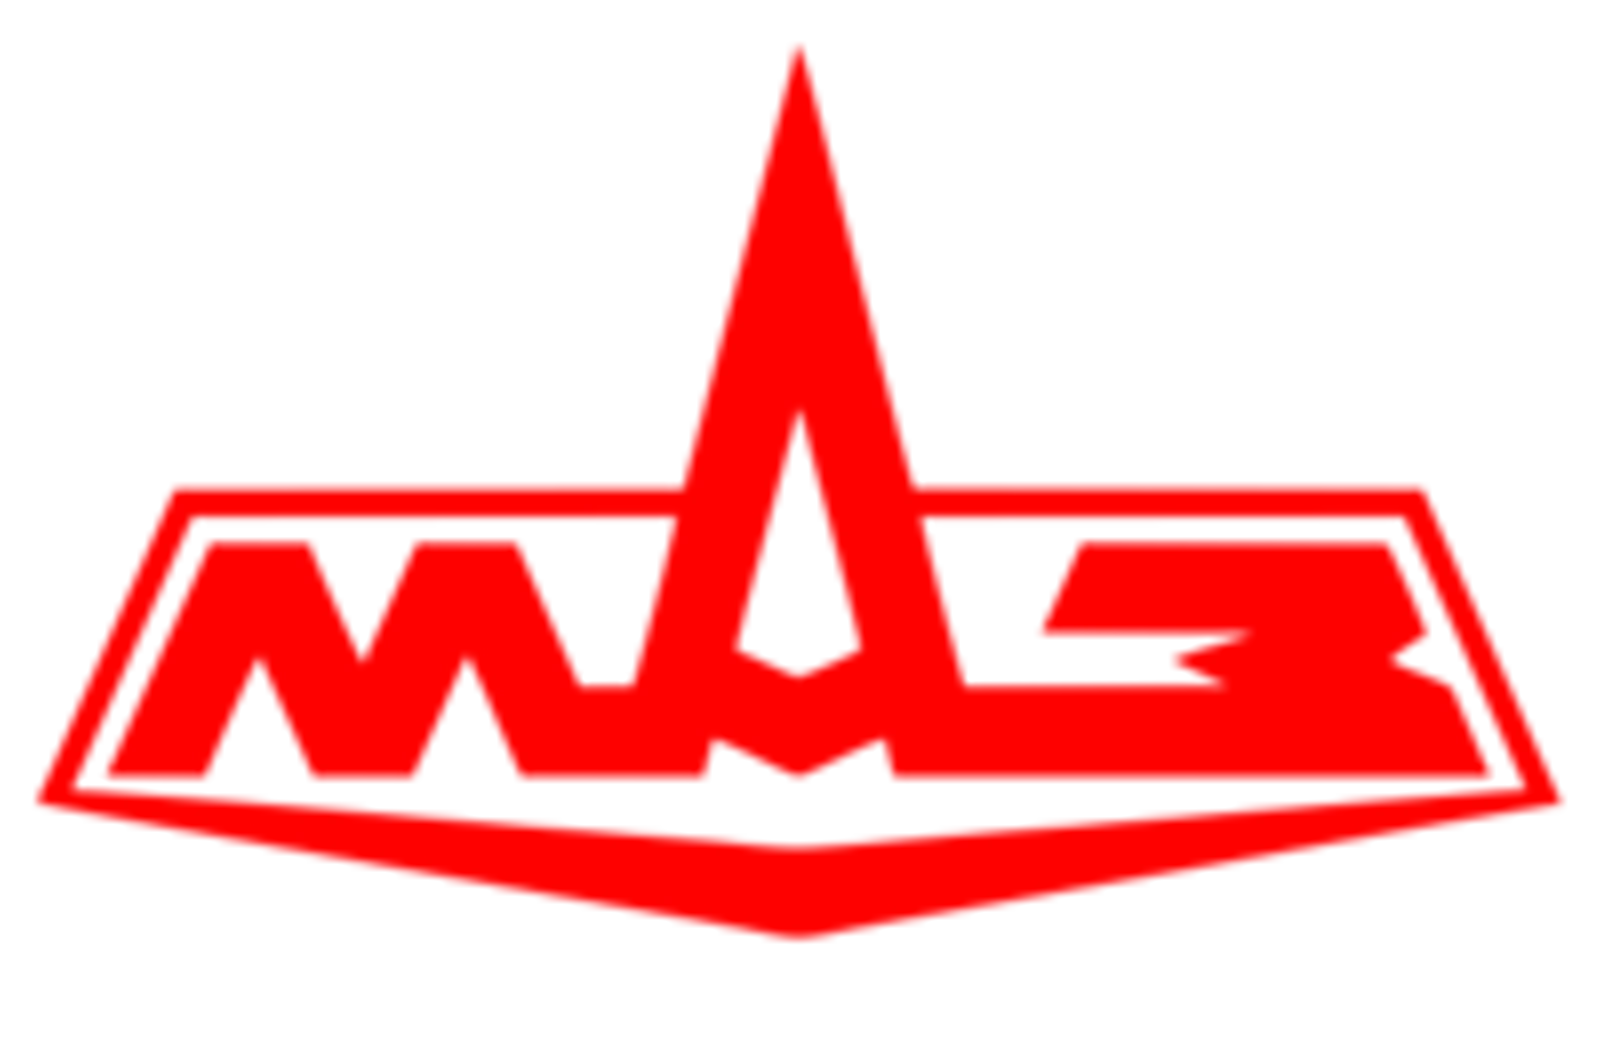 Логотип МАЗ